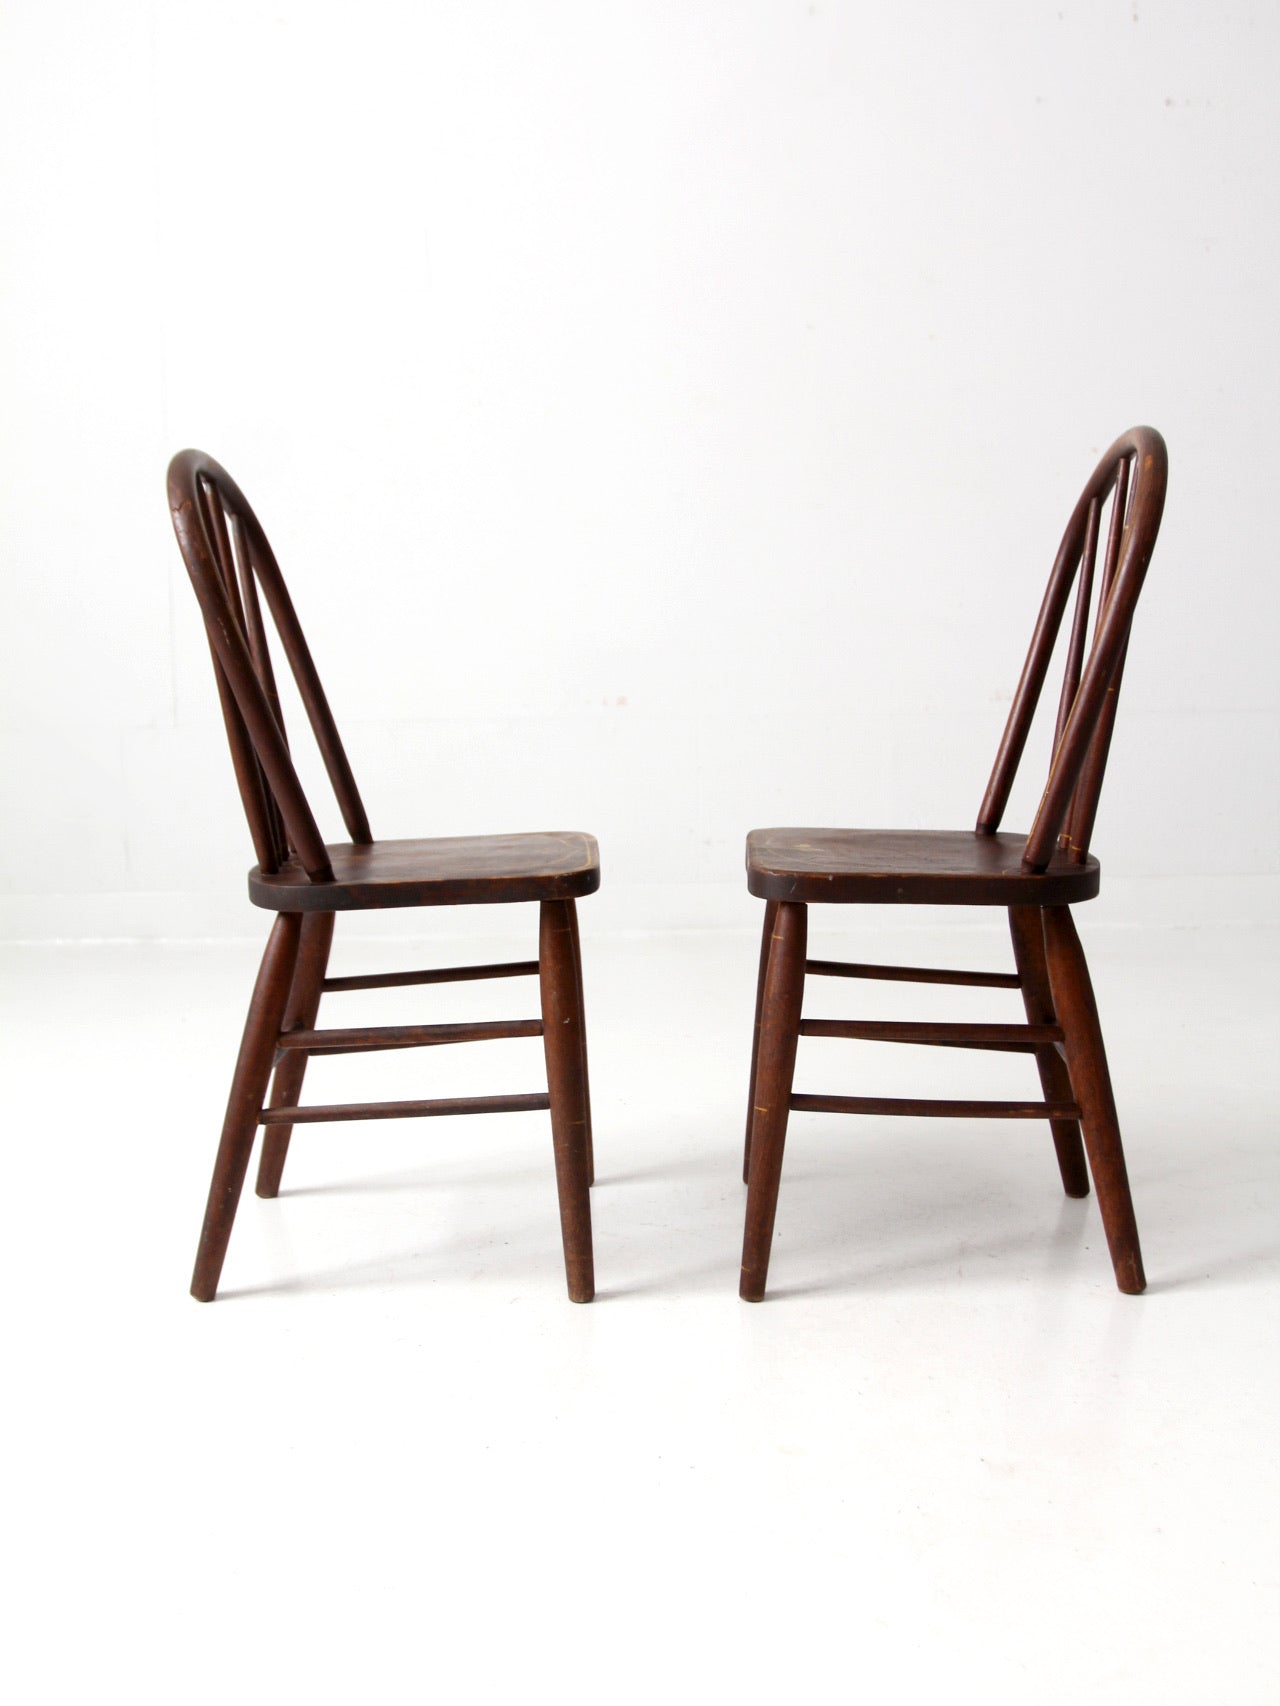 antique Webster Mfg Co children's chair pair